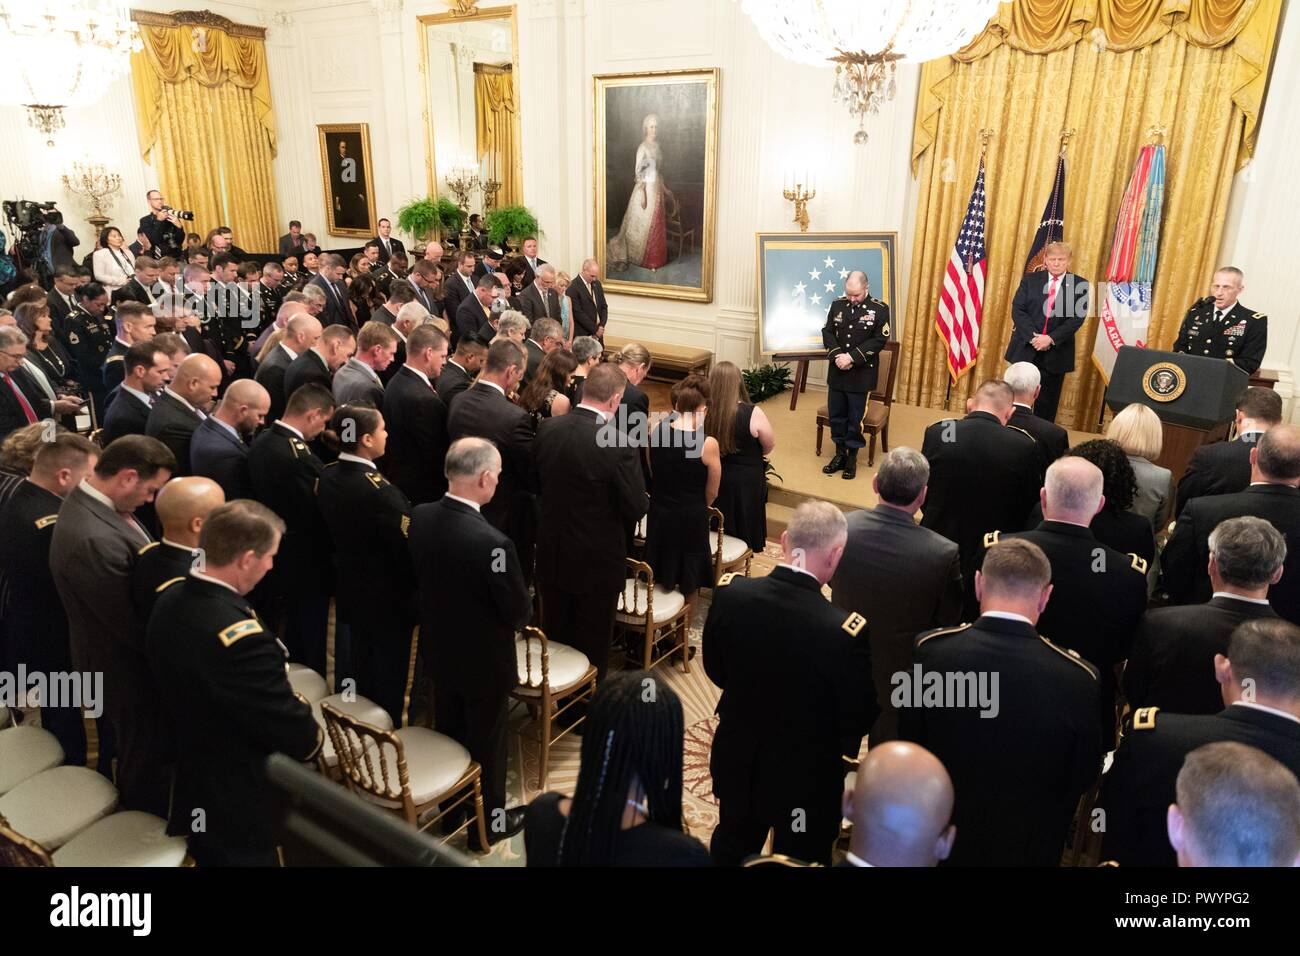 Presidente estadounidense Donald Trump presenta la Medalla de Honor al Sargento del Ejército estadounidense retirado. Ronald J. Shurer II durante una ceremonia en el Salón Este de la Casa Blanca, el 1 de octubre de 2018 en Washington, DC. Sharer recibió la medalla de heroísmo durante la batalla del shok Valle en Afganistán. Foto de stock